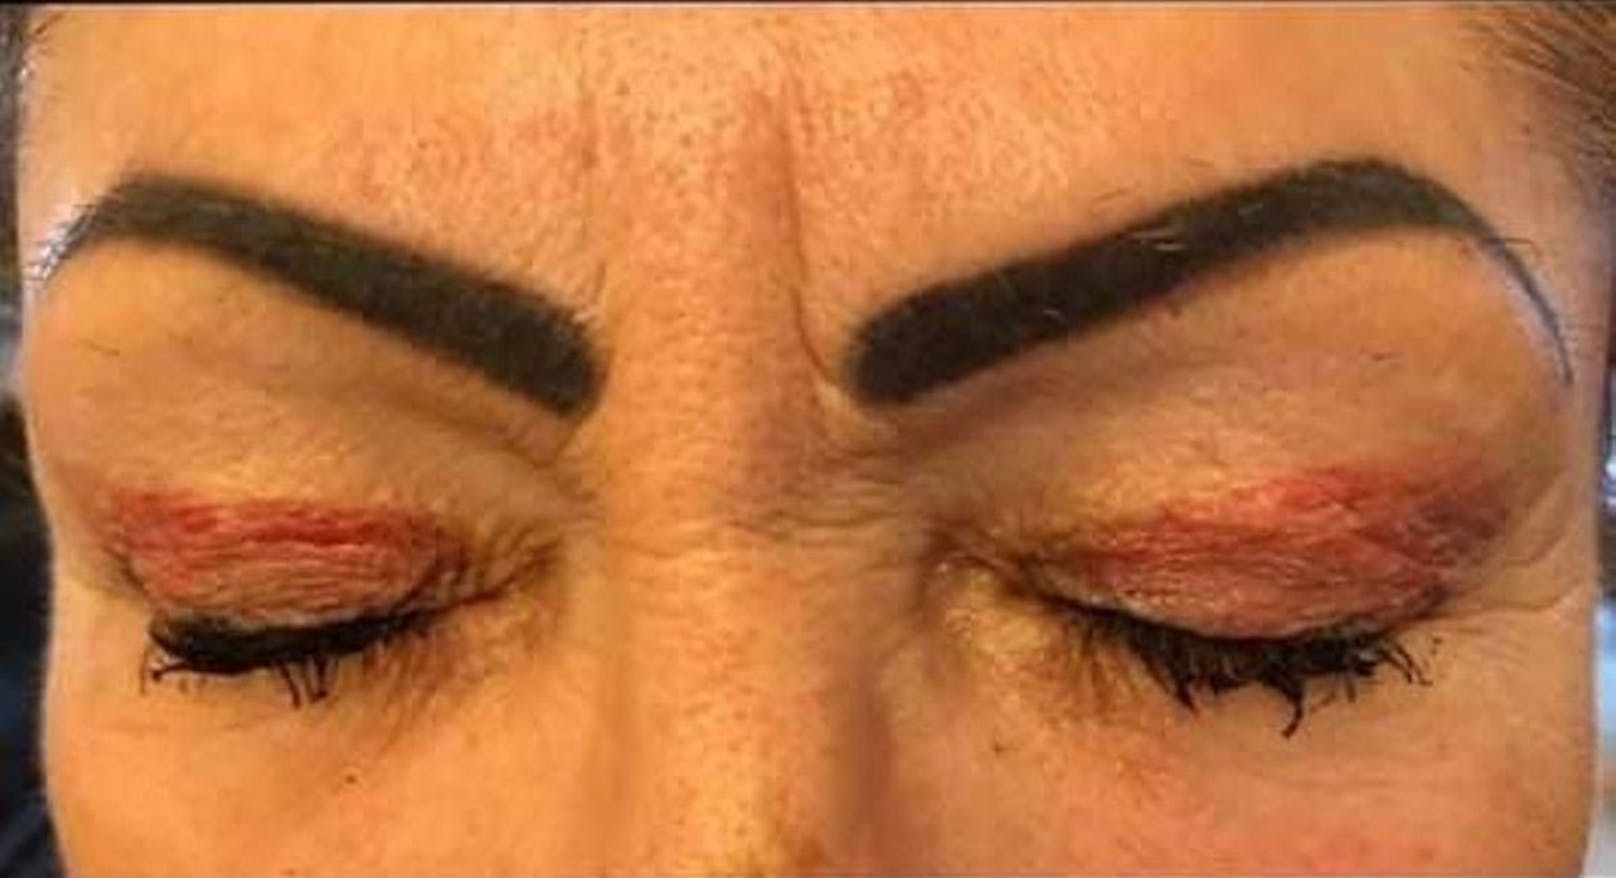 Pfusch nach Augenlidschattierung: Eine Frau aus dem Kanton Waadt erlebte nach einer kosmetischen Behandlung eine böse Überraschung.